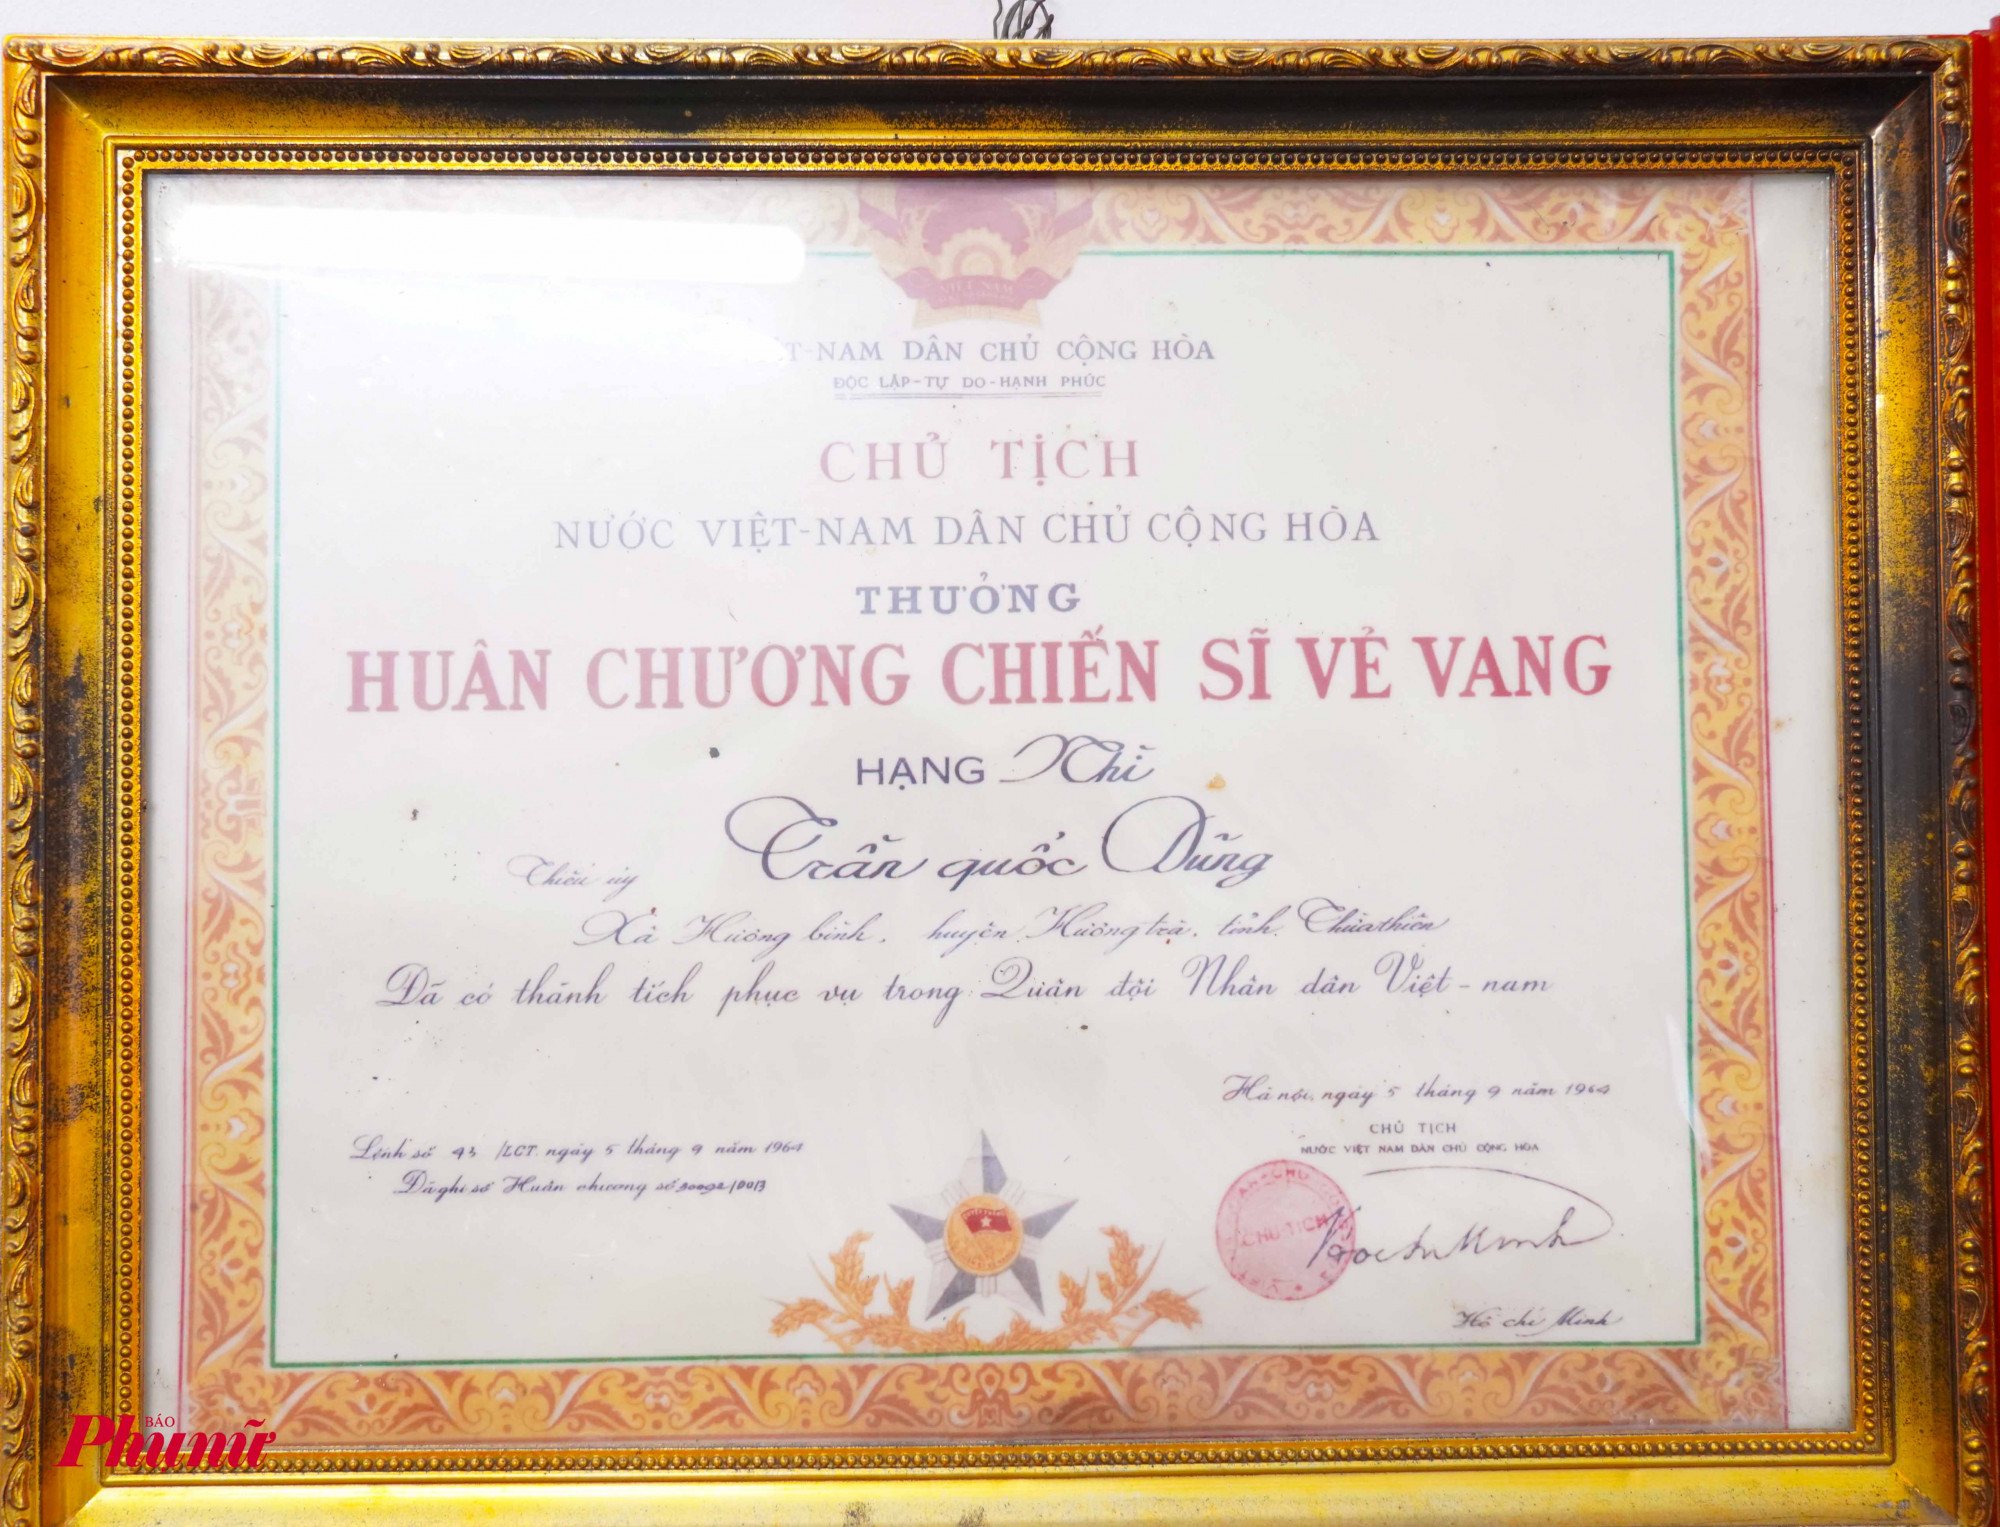 huân chương Chiến sĩ vẻ vang năm 1964 do Chủ tịch Hồ CHí Minh ký tặng.